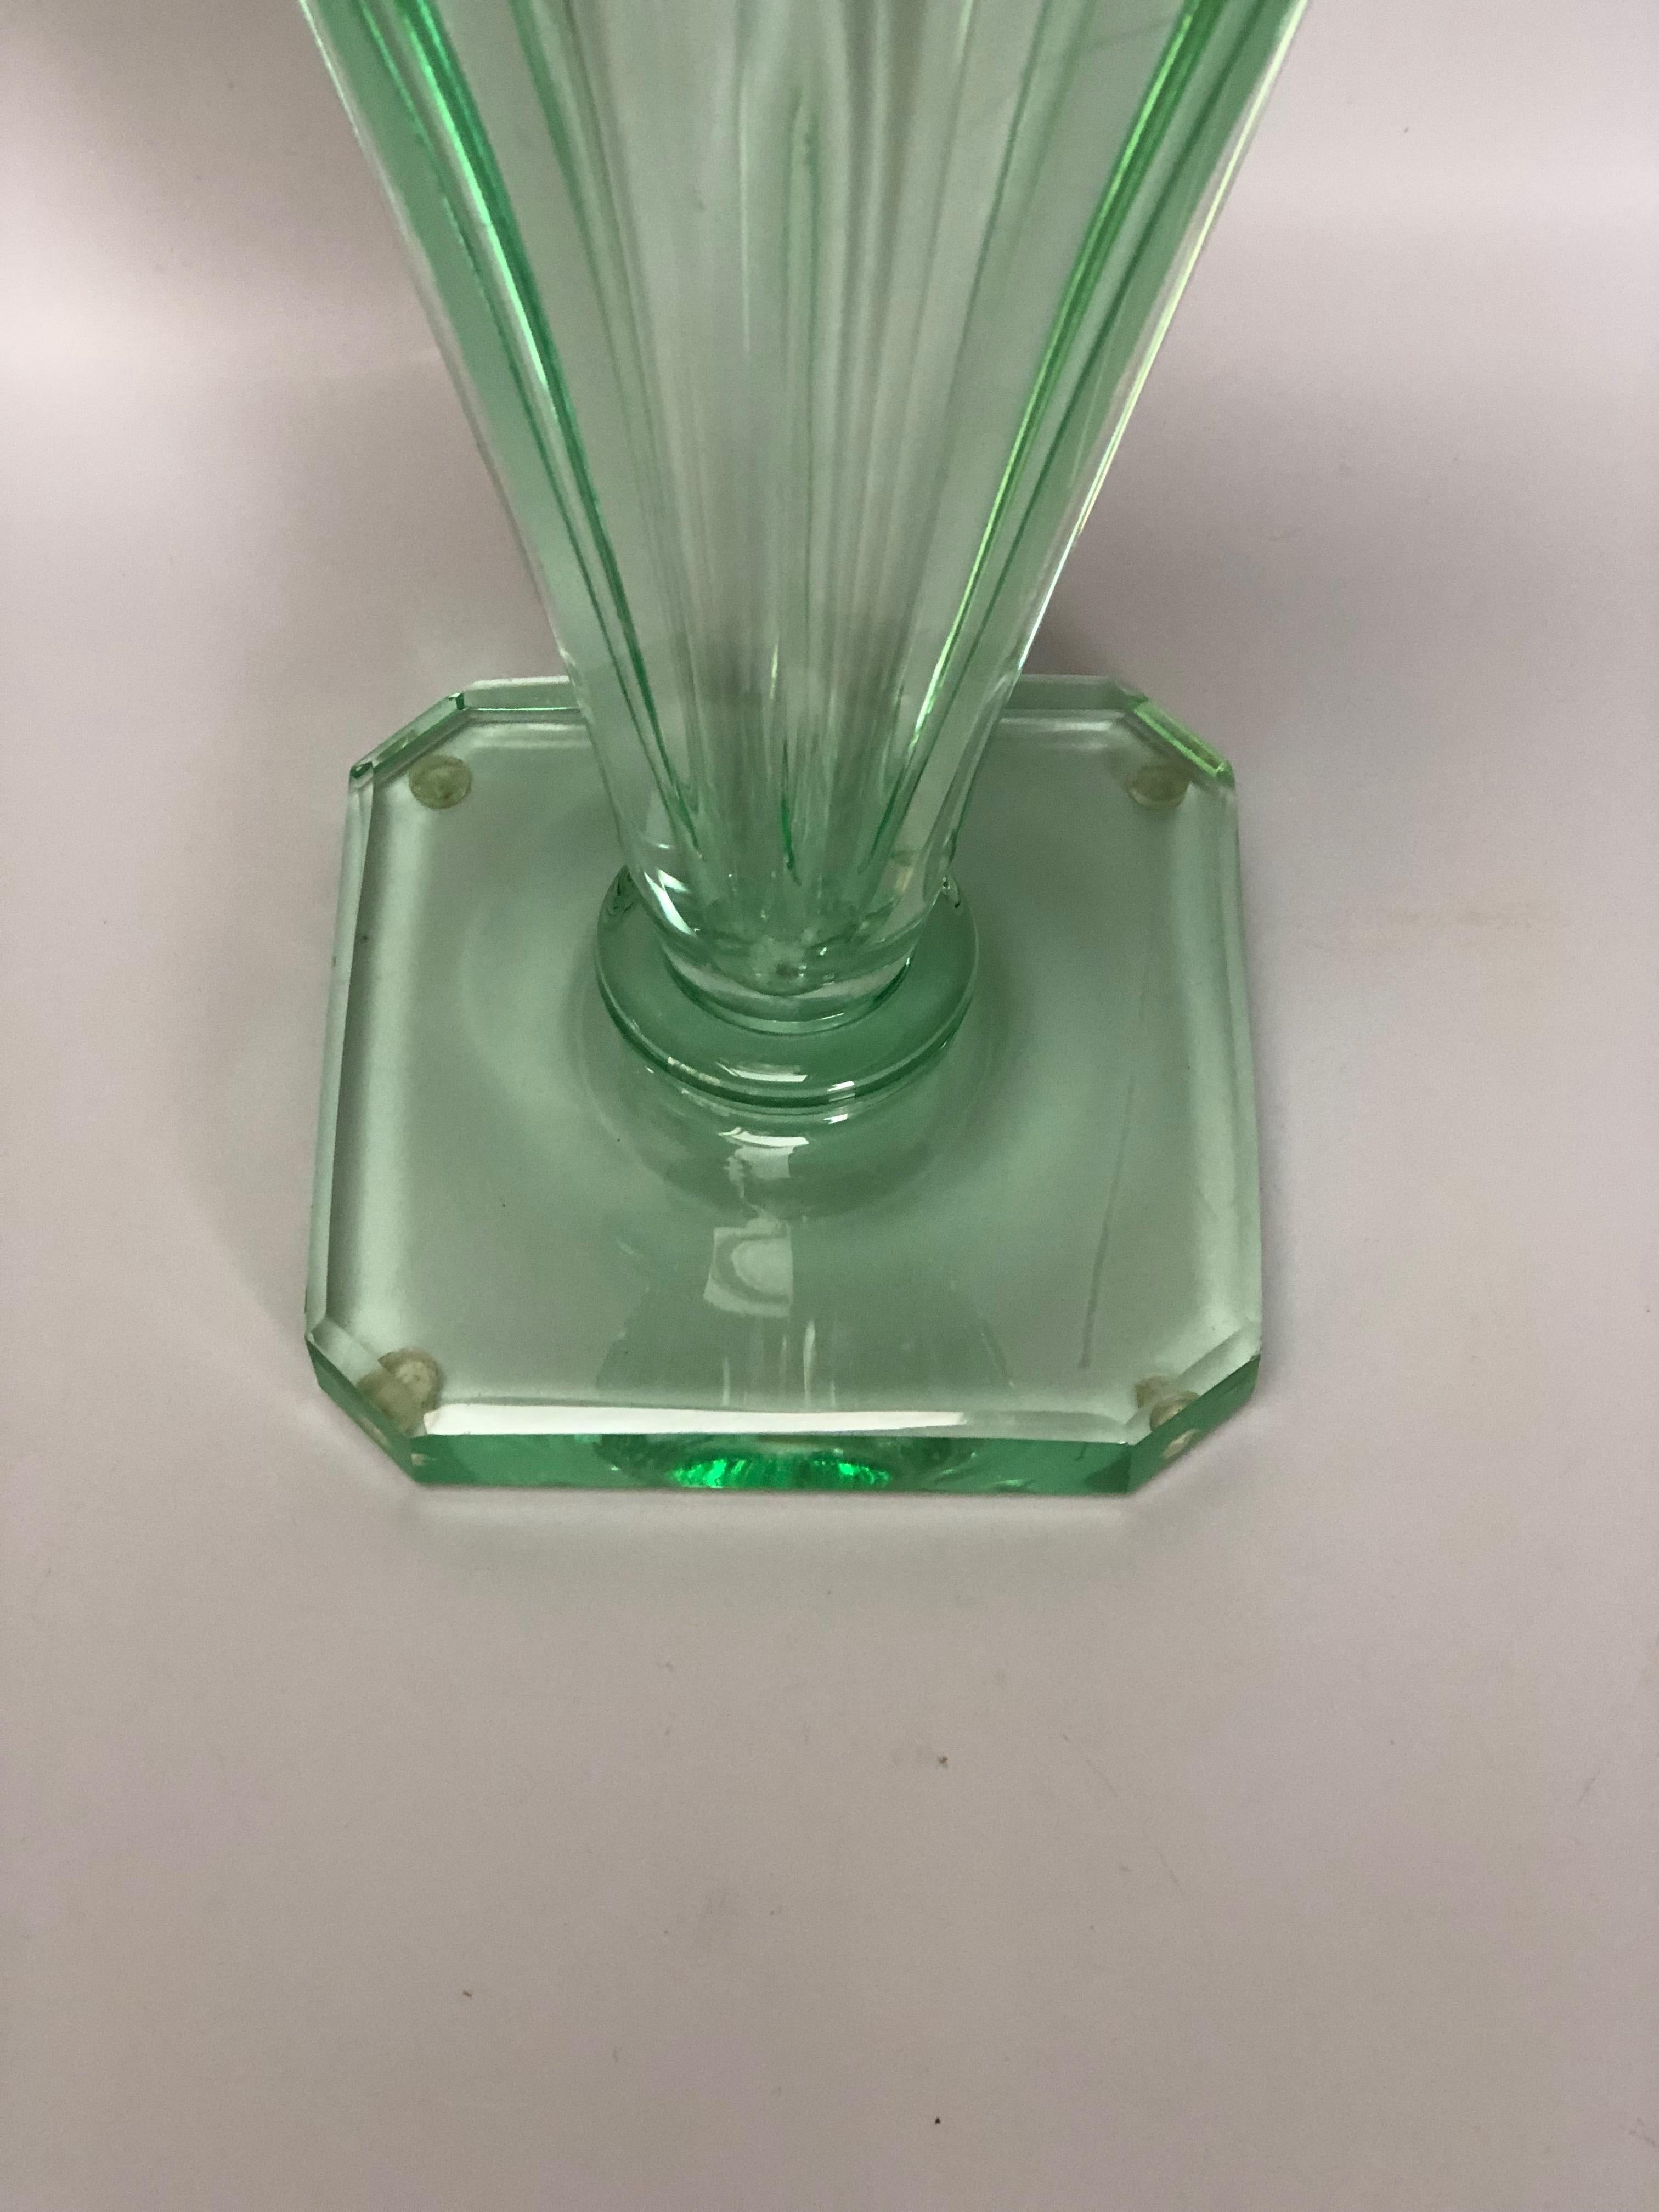 Kegelförmige Vase im Art déco-Stil um 1930 in grüner Farbe.
Signiert Daum Nancy France. In perfektem Zustand
Beachten Sie die Mikrokratzer im Inneren

Höhe: 27,3 cm
Halsdurchmesser: 14,5 cm
Sockel: 11,3cm x 11,3cm
Gewicht: 2.6 kg

Daum